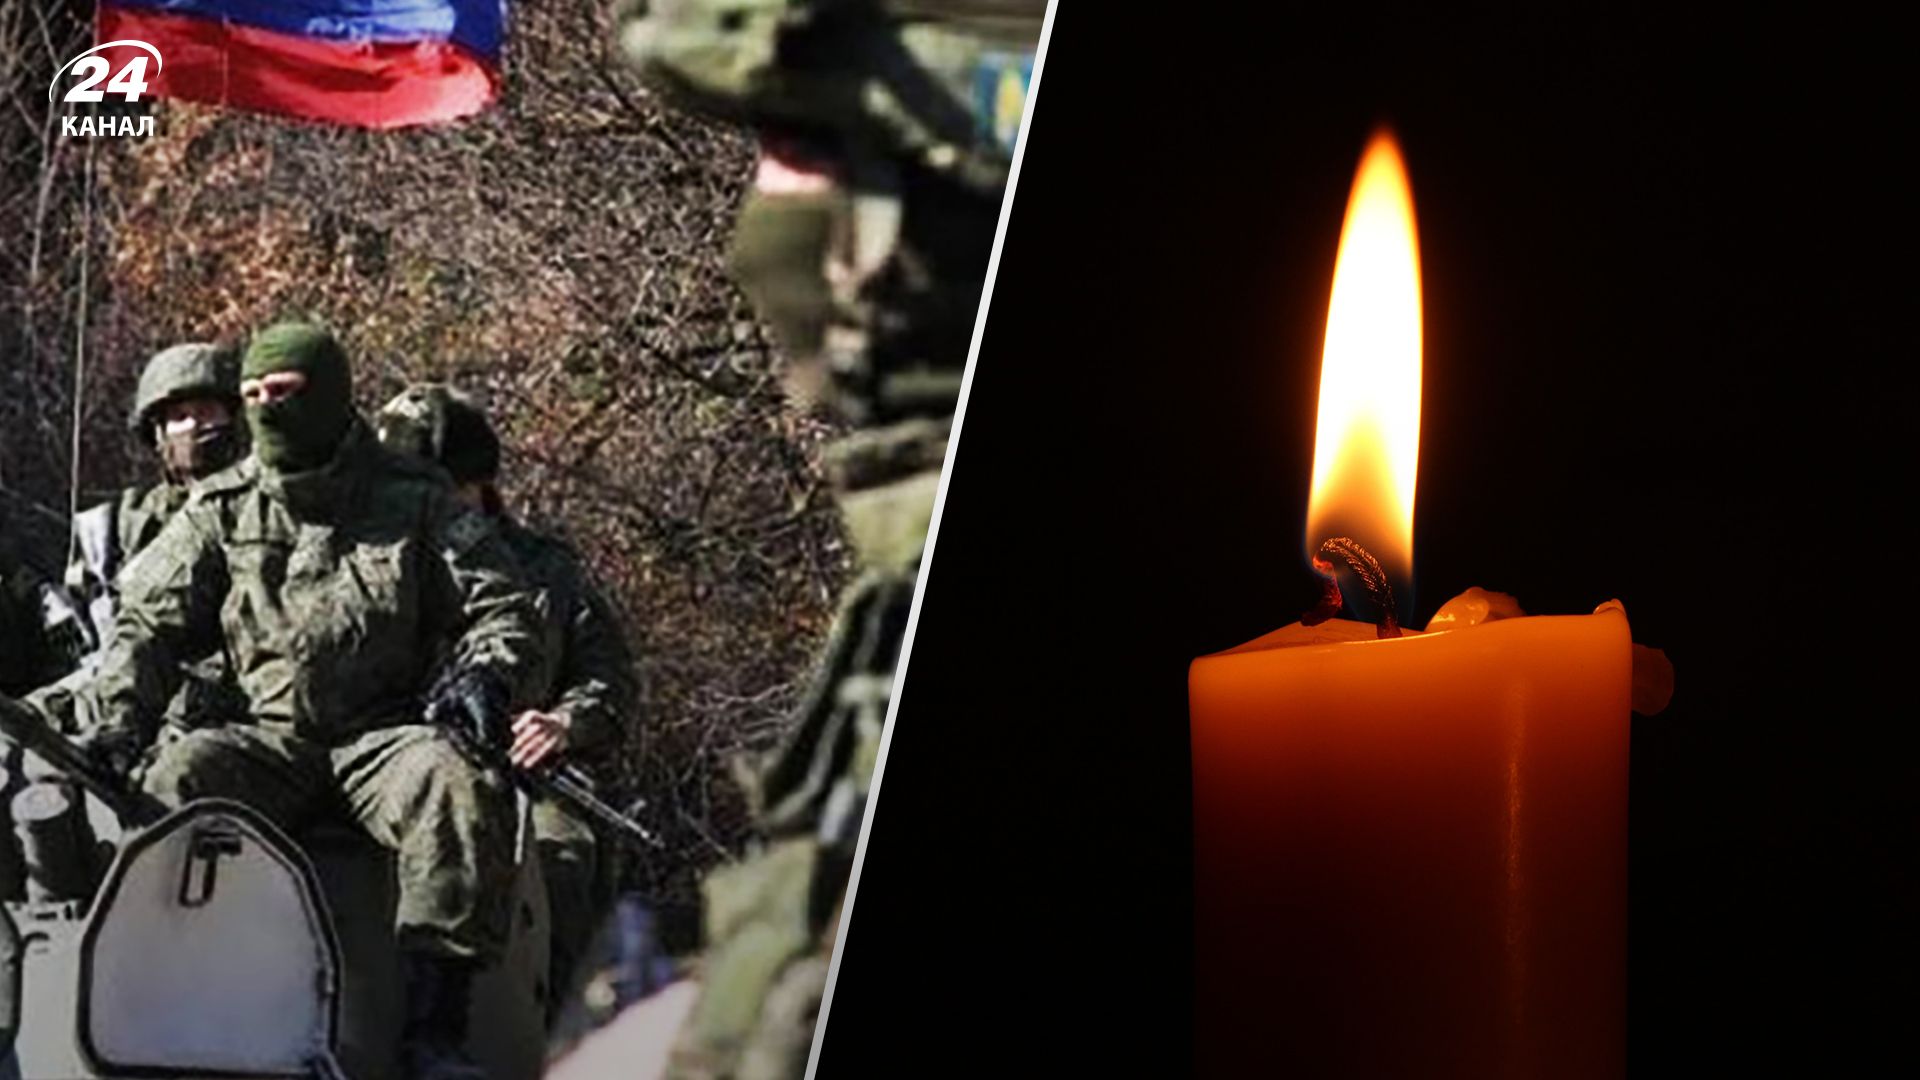 оккупанты повесили гражданских на Луганщине, фото в сети - все, что известно - 24 Канал